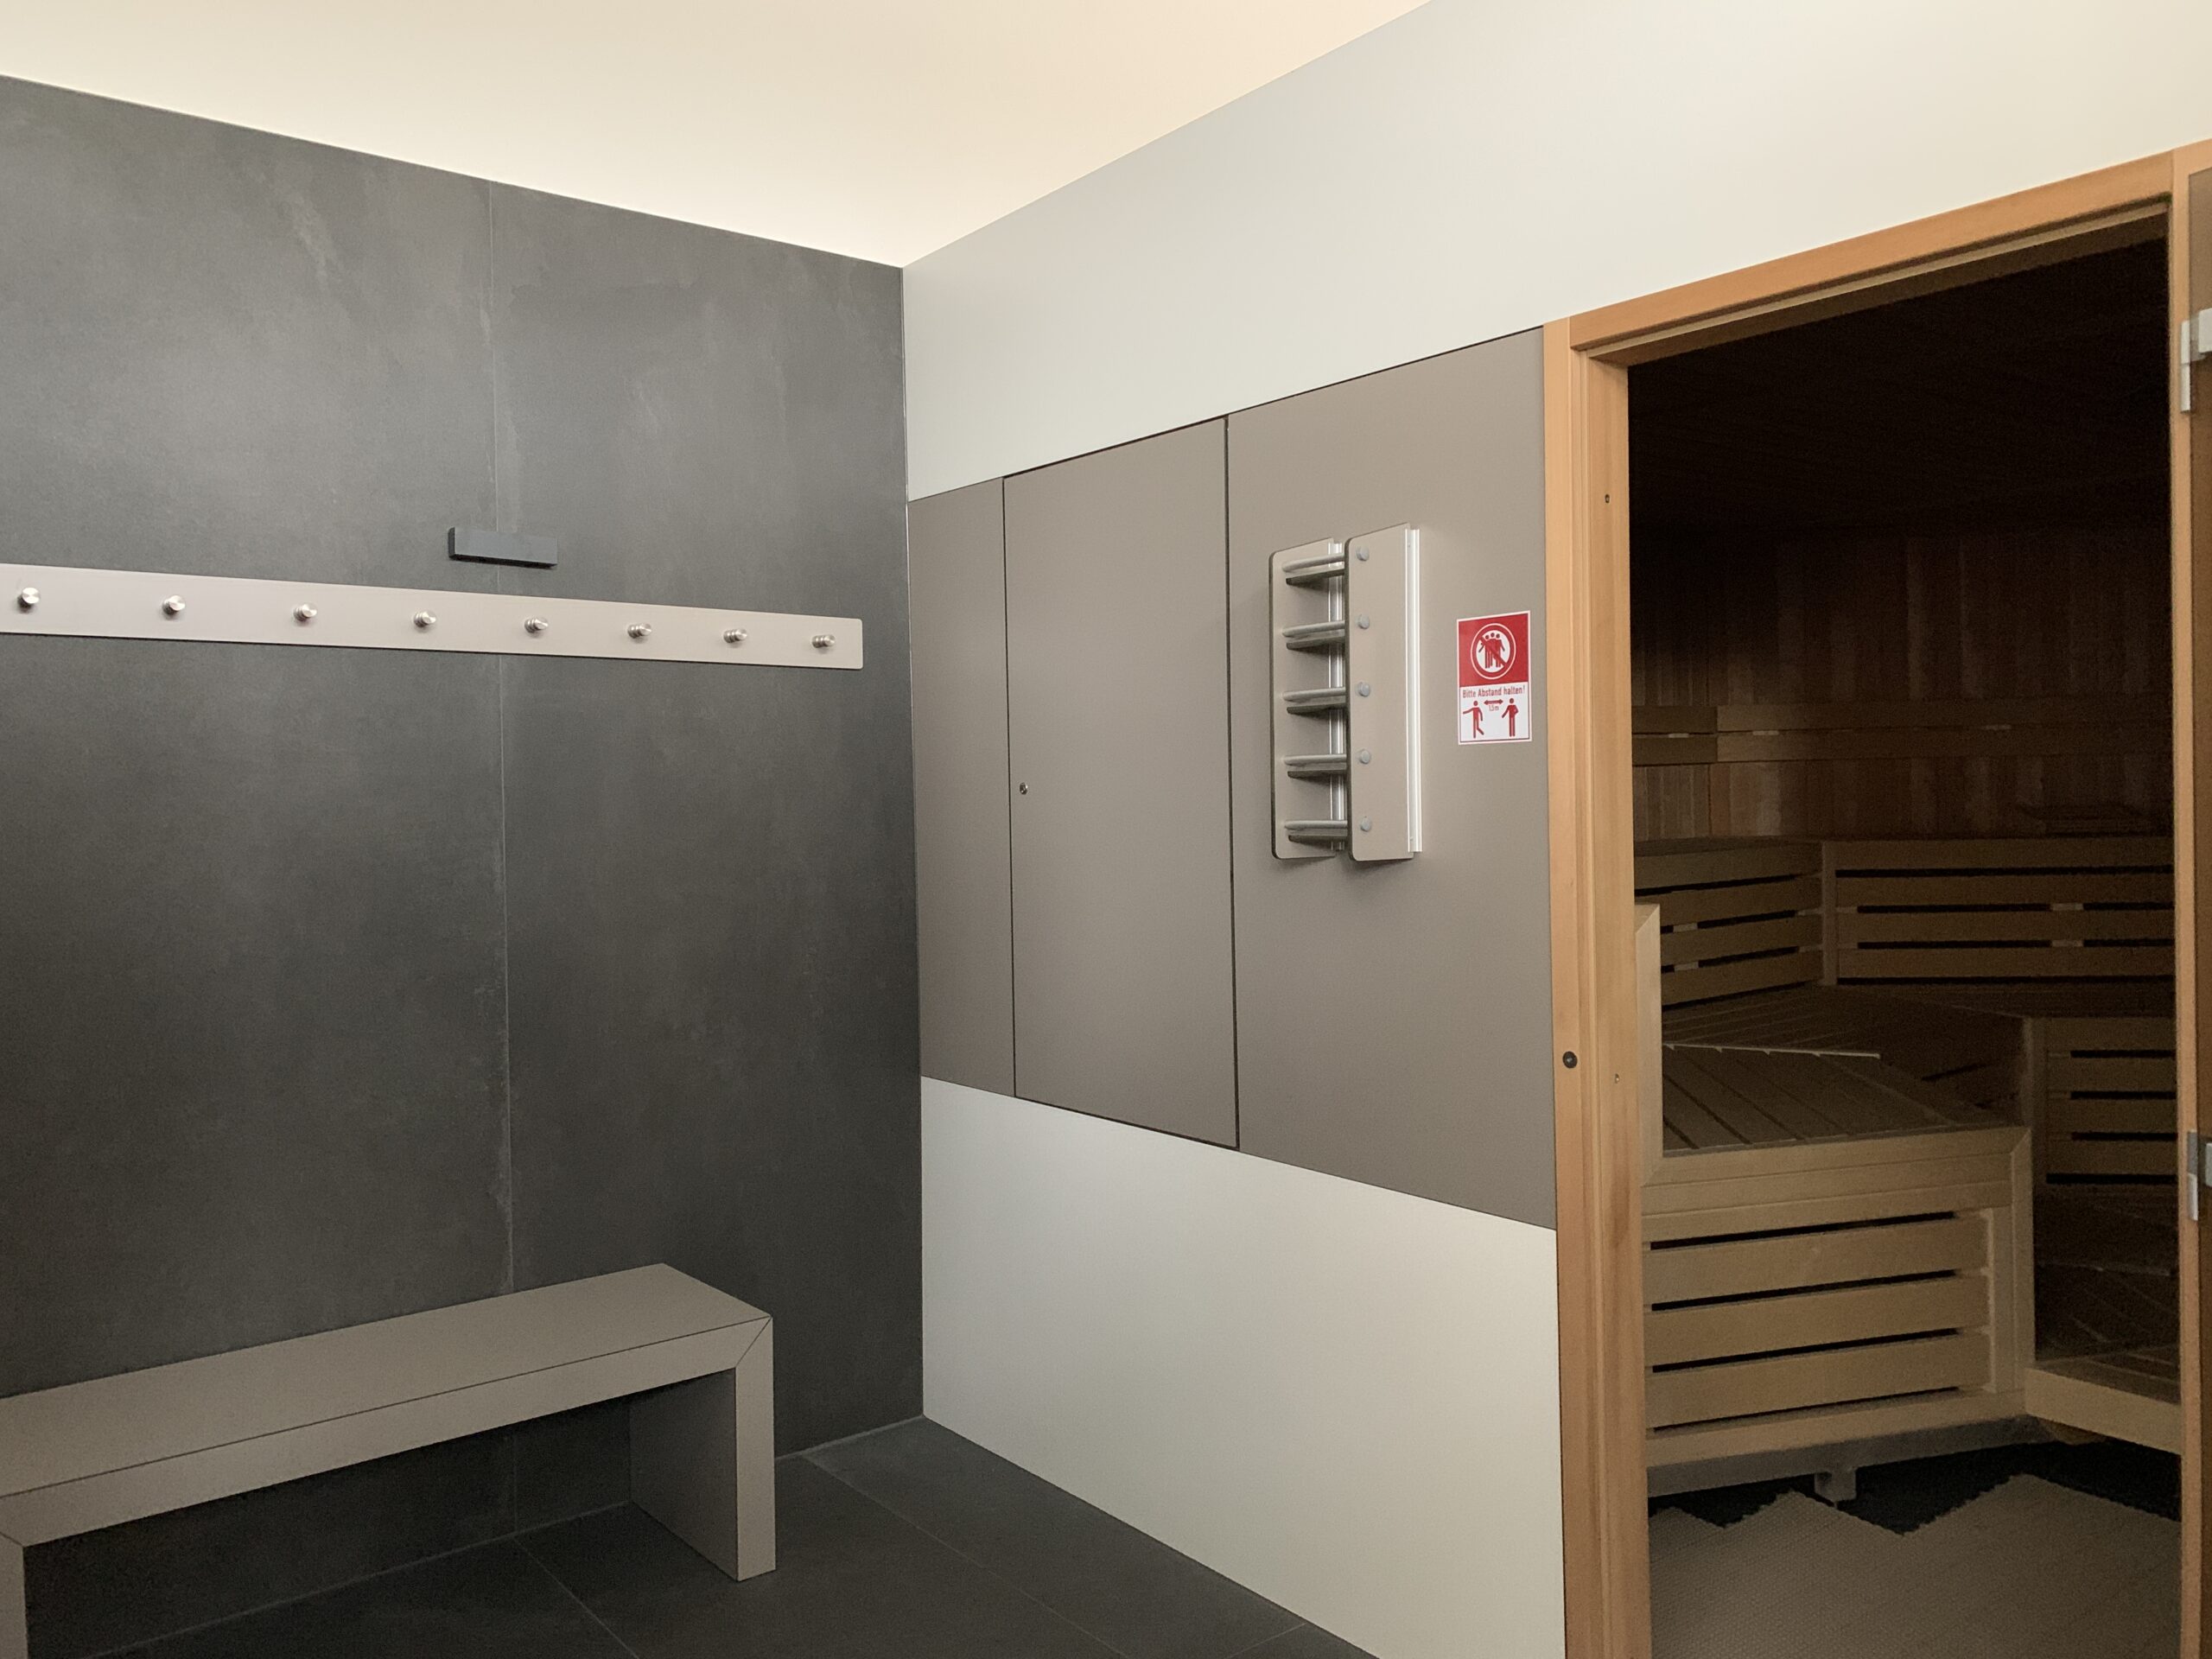 Dusche-Saunabereich Siegen - T1 Gesundheitszentrum